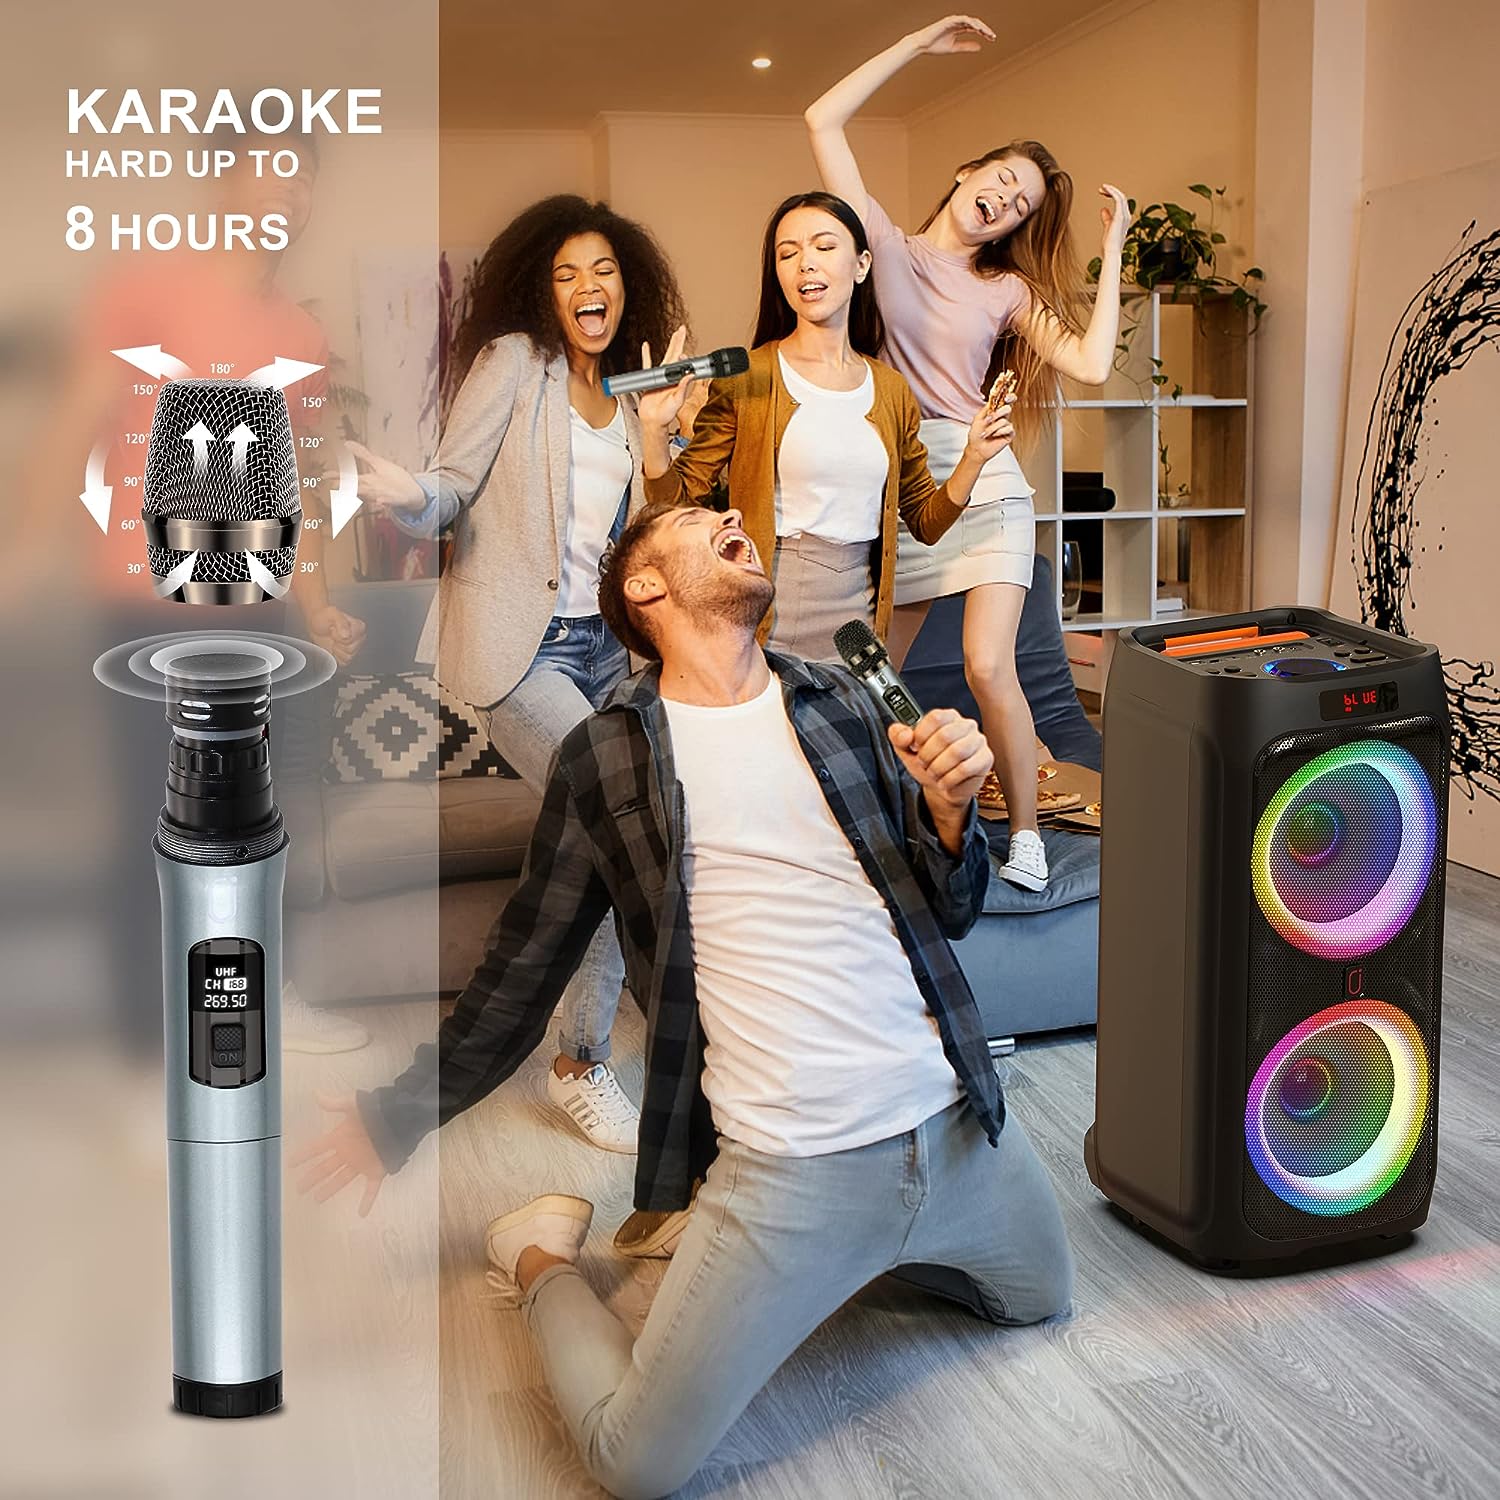 Máquina de karaoke con 2 micrófonos inalámbricos para adultos, altavoz